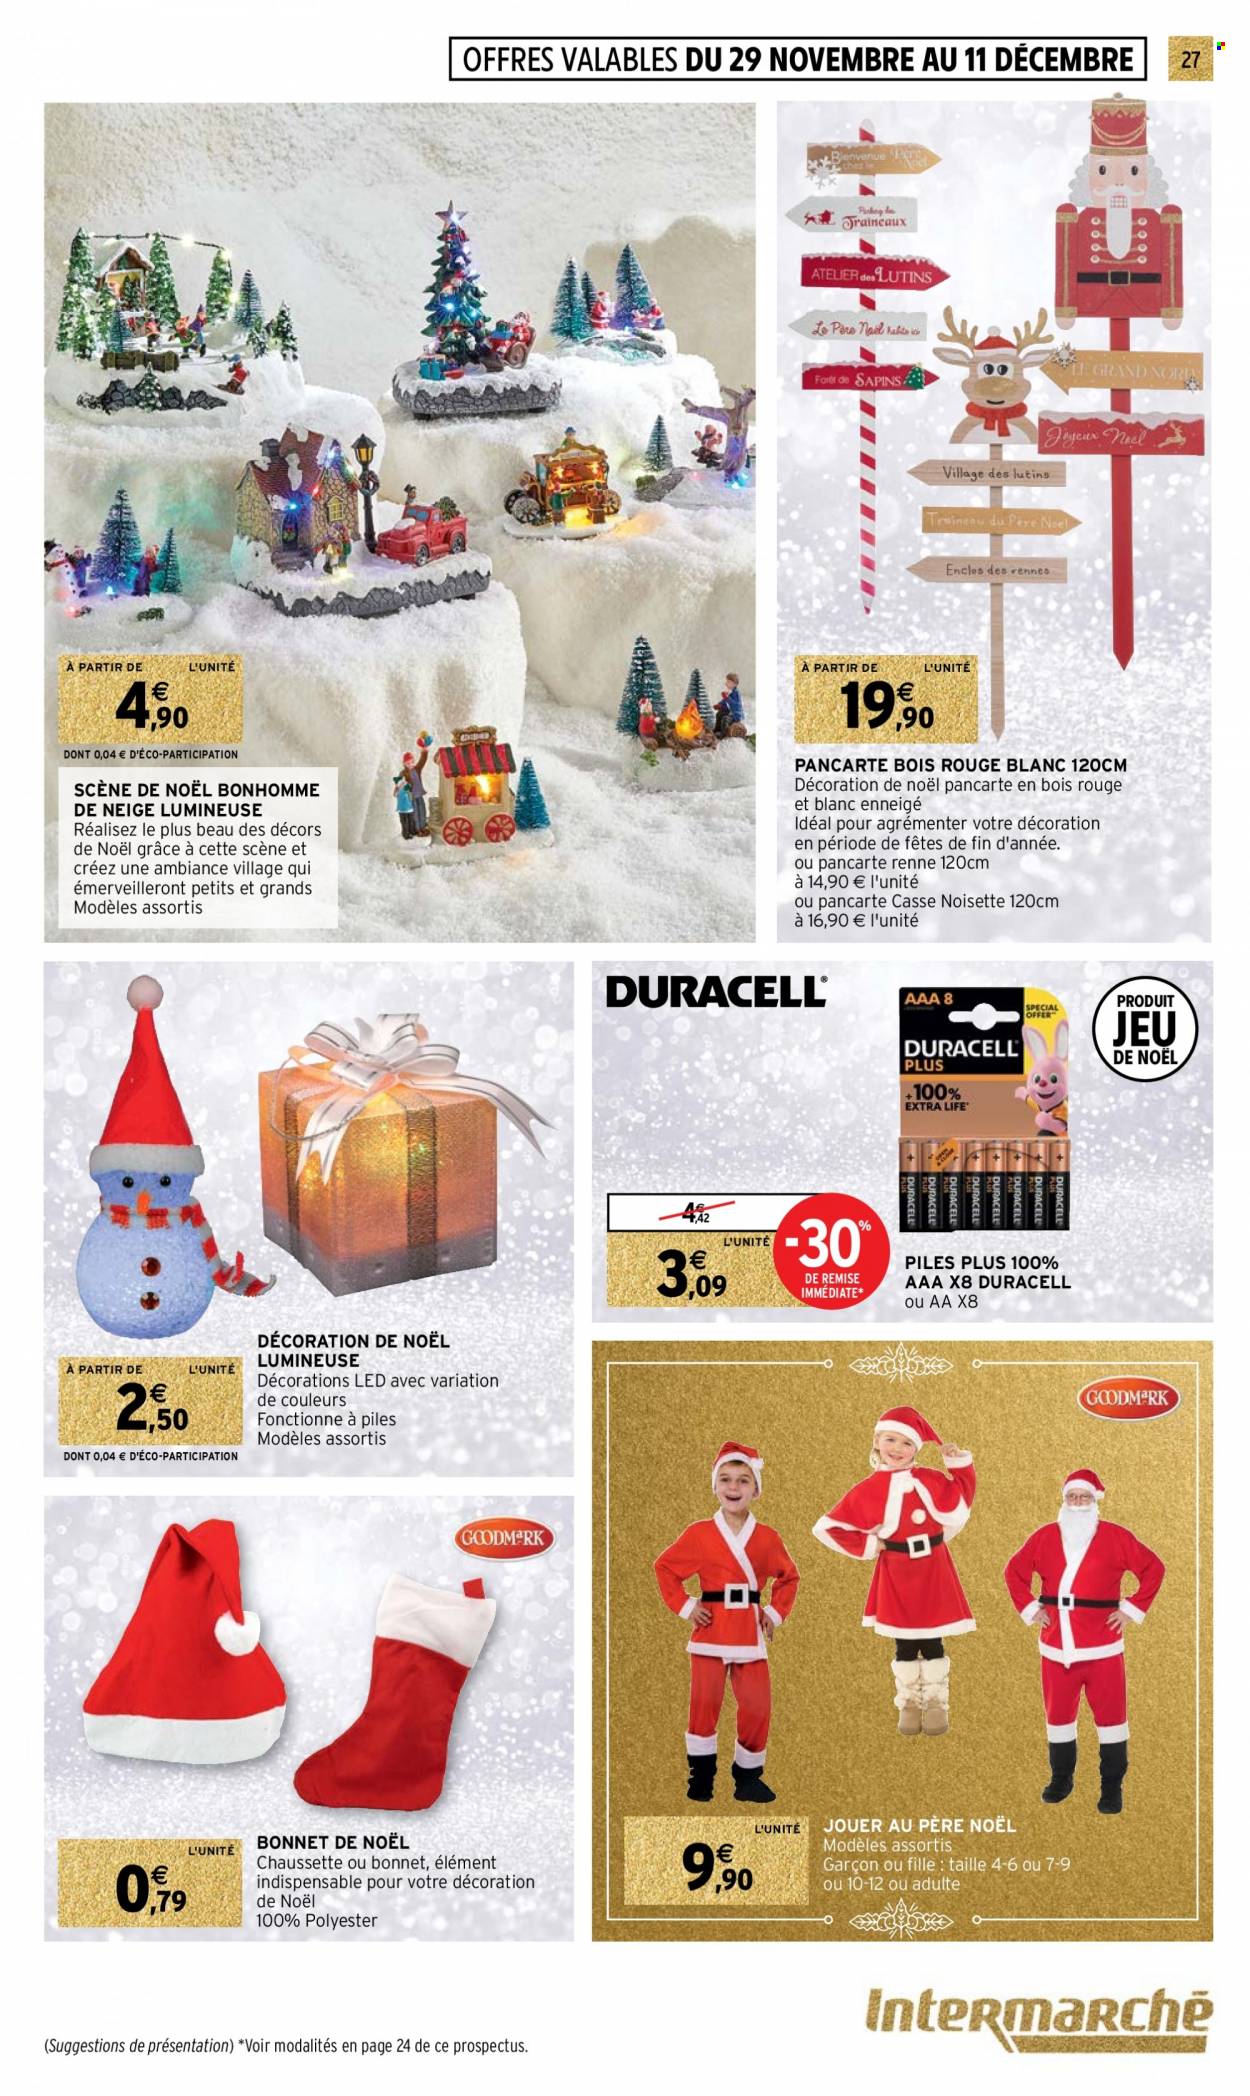 thumbnail - Catalogue Intermarché Hyper - 29/11/2022 - 04/12/2022 - Produits soldés - père noël, bonhomme de neige, Duracell. Page 27.